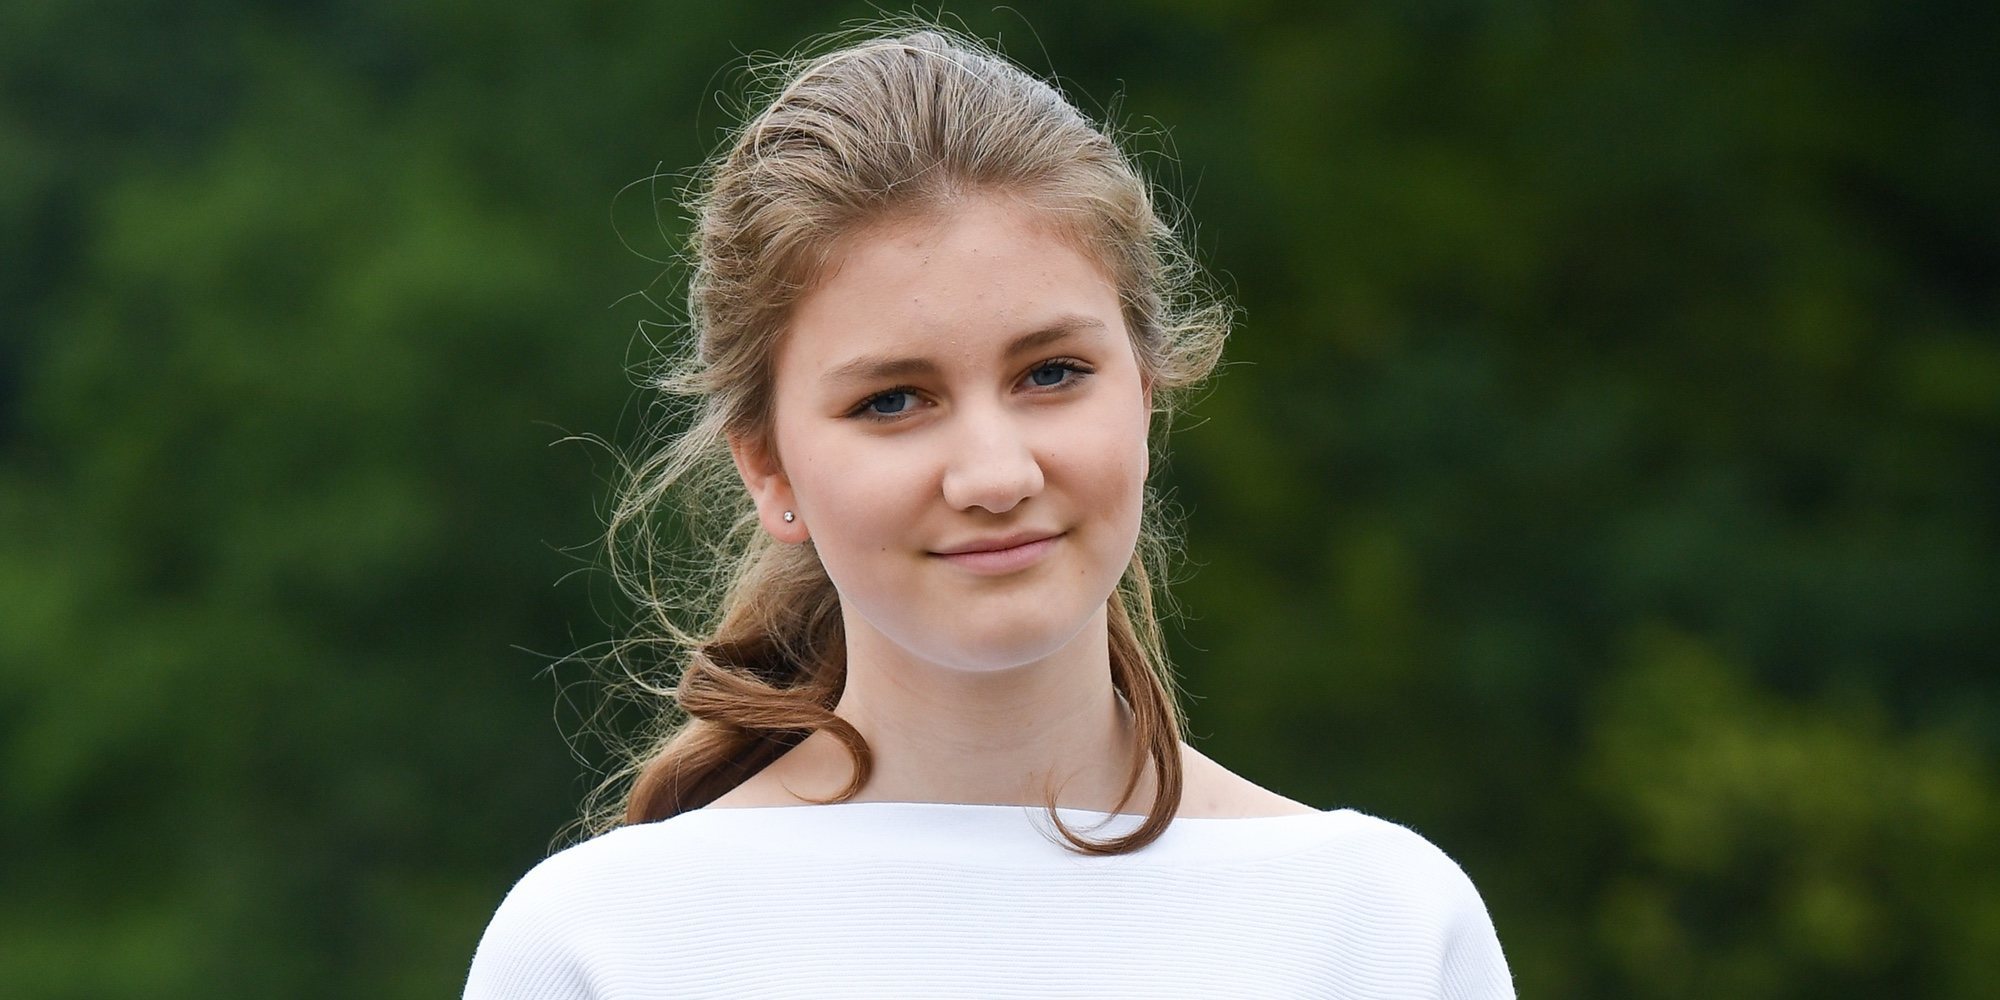 Isabel de Bélgica abre el camino que seguirá la Princesa Leonor cuando cumpla 18 años